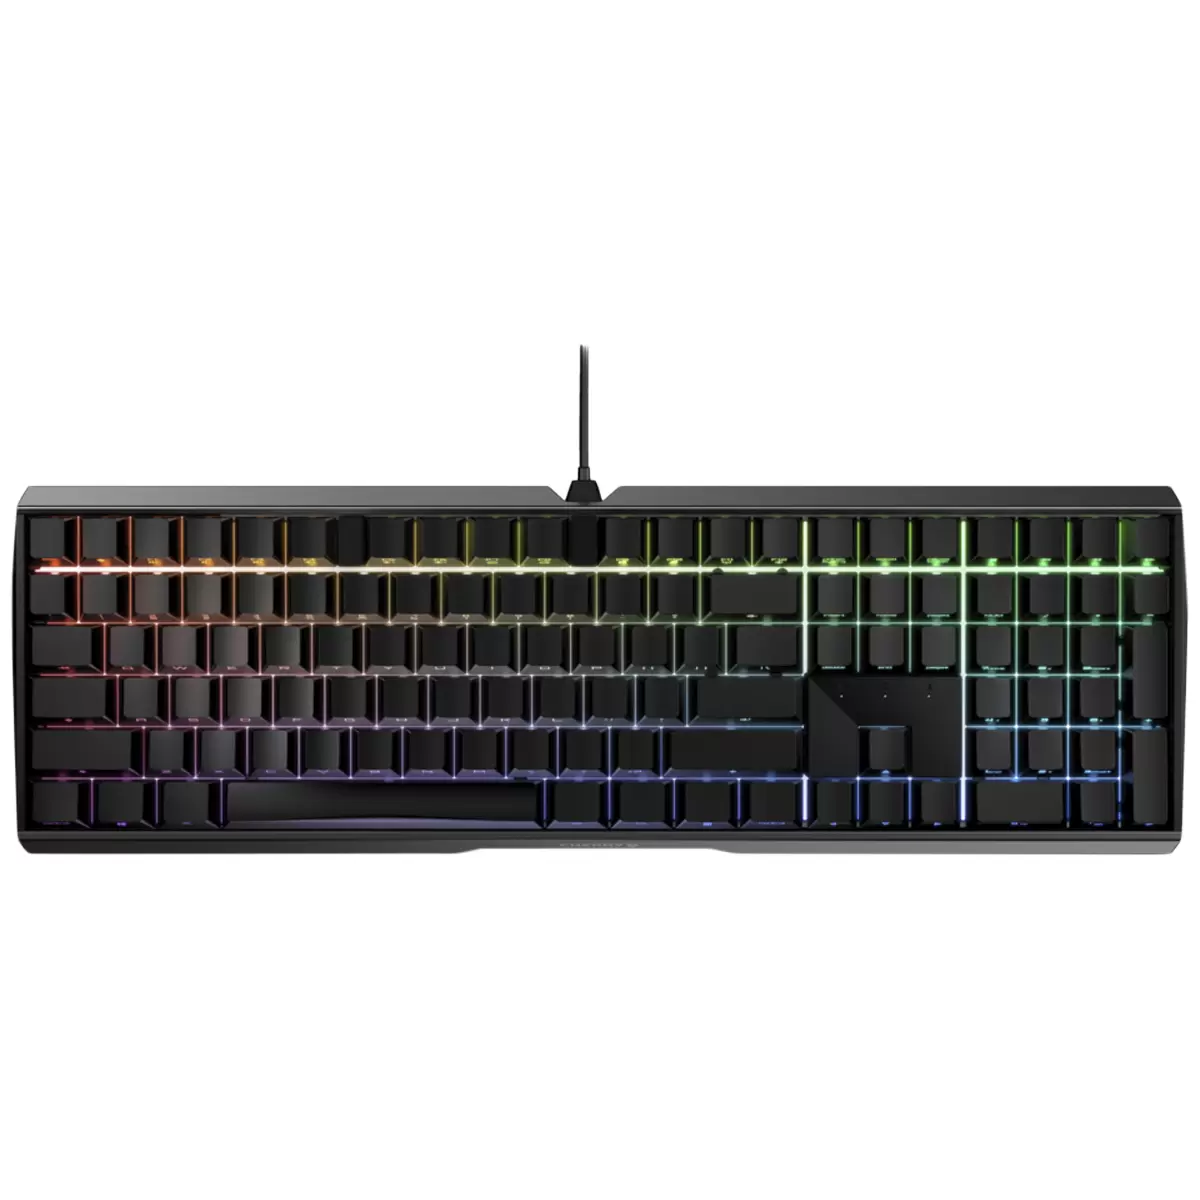 CHERRY MX 3.0S RGB Gaming Keyboard (Black)  G80-3874LXAEU-2